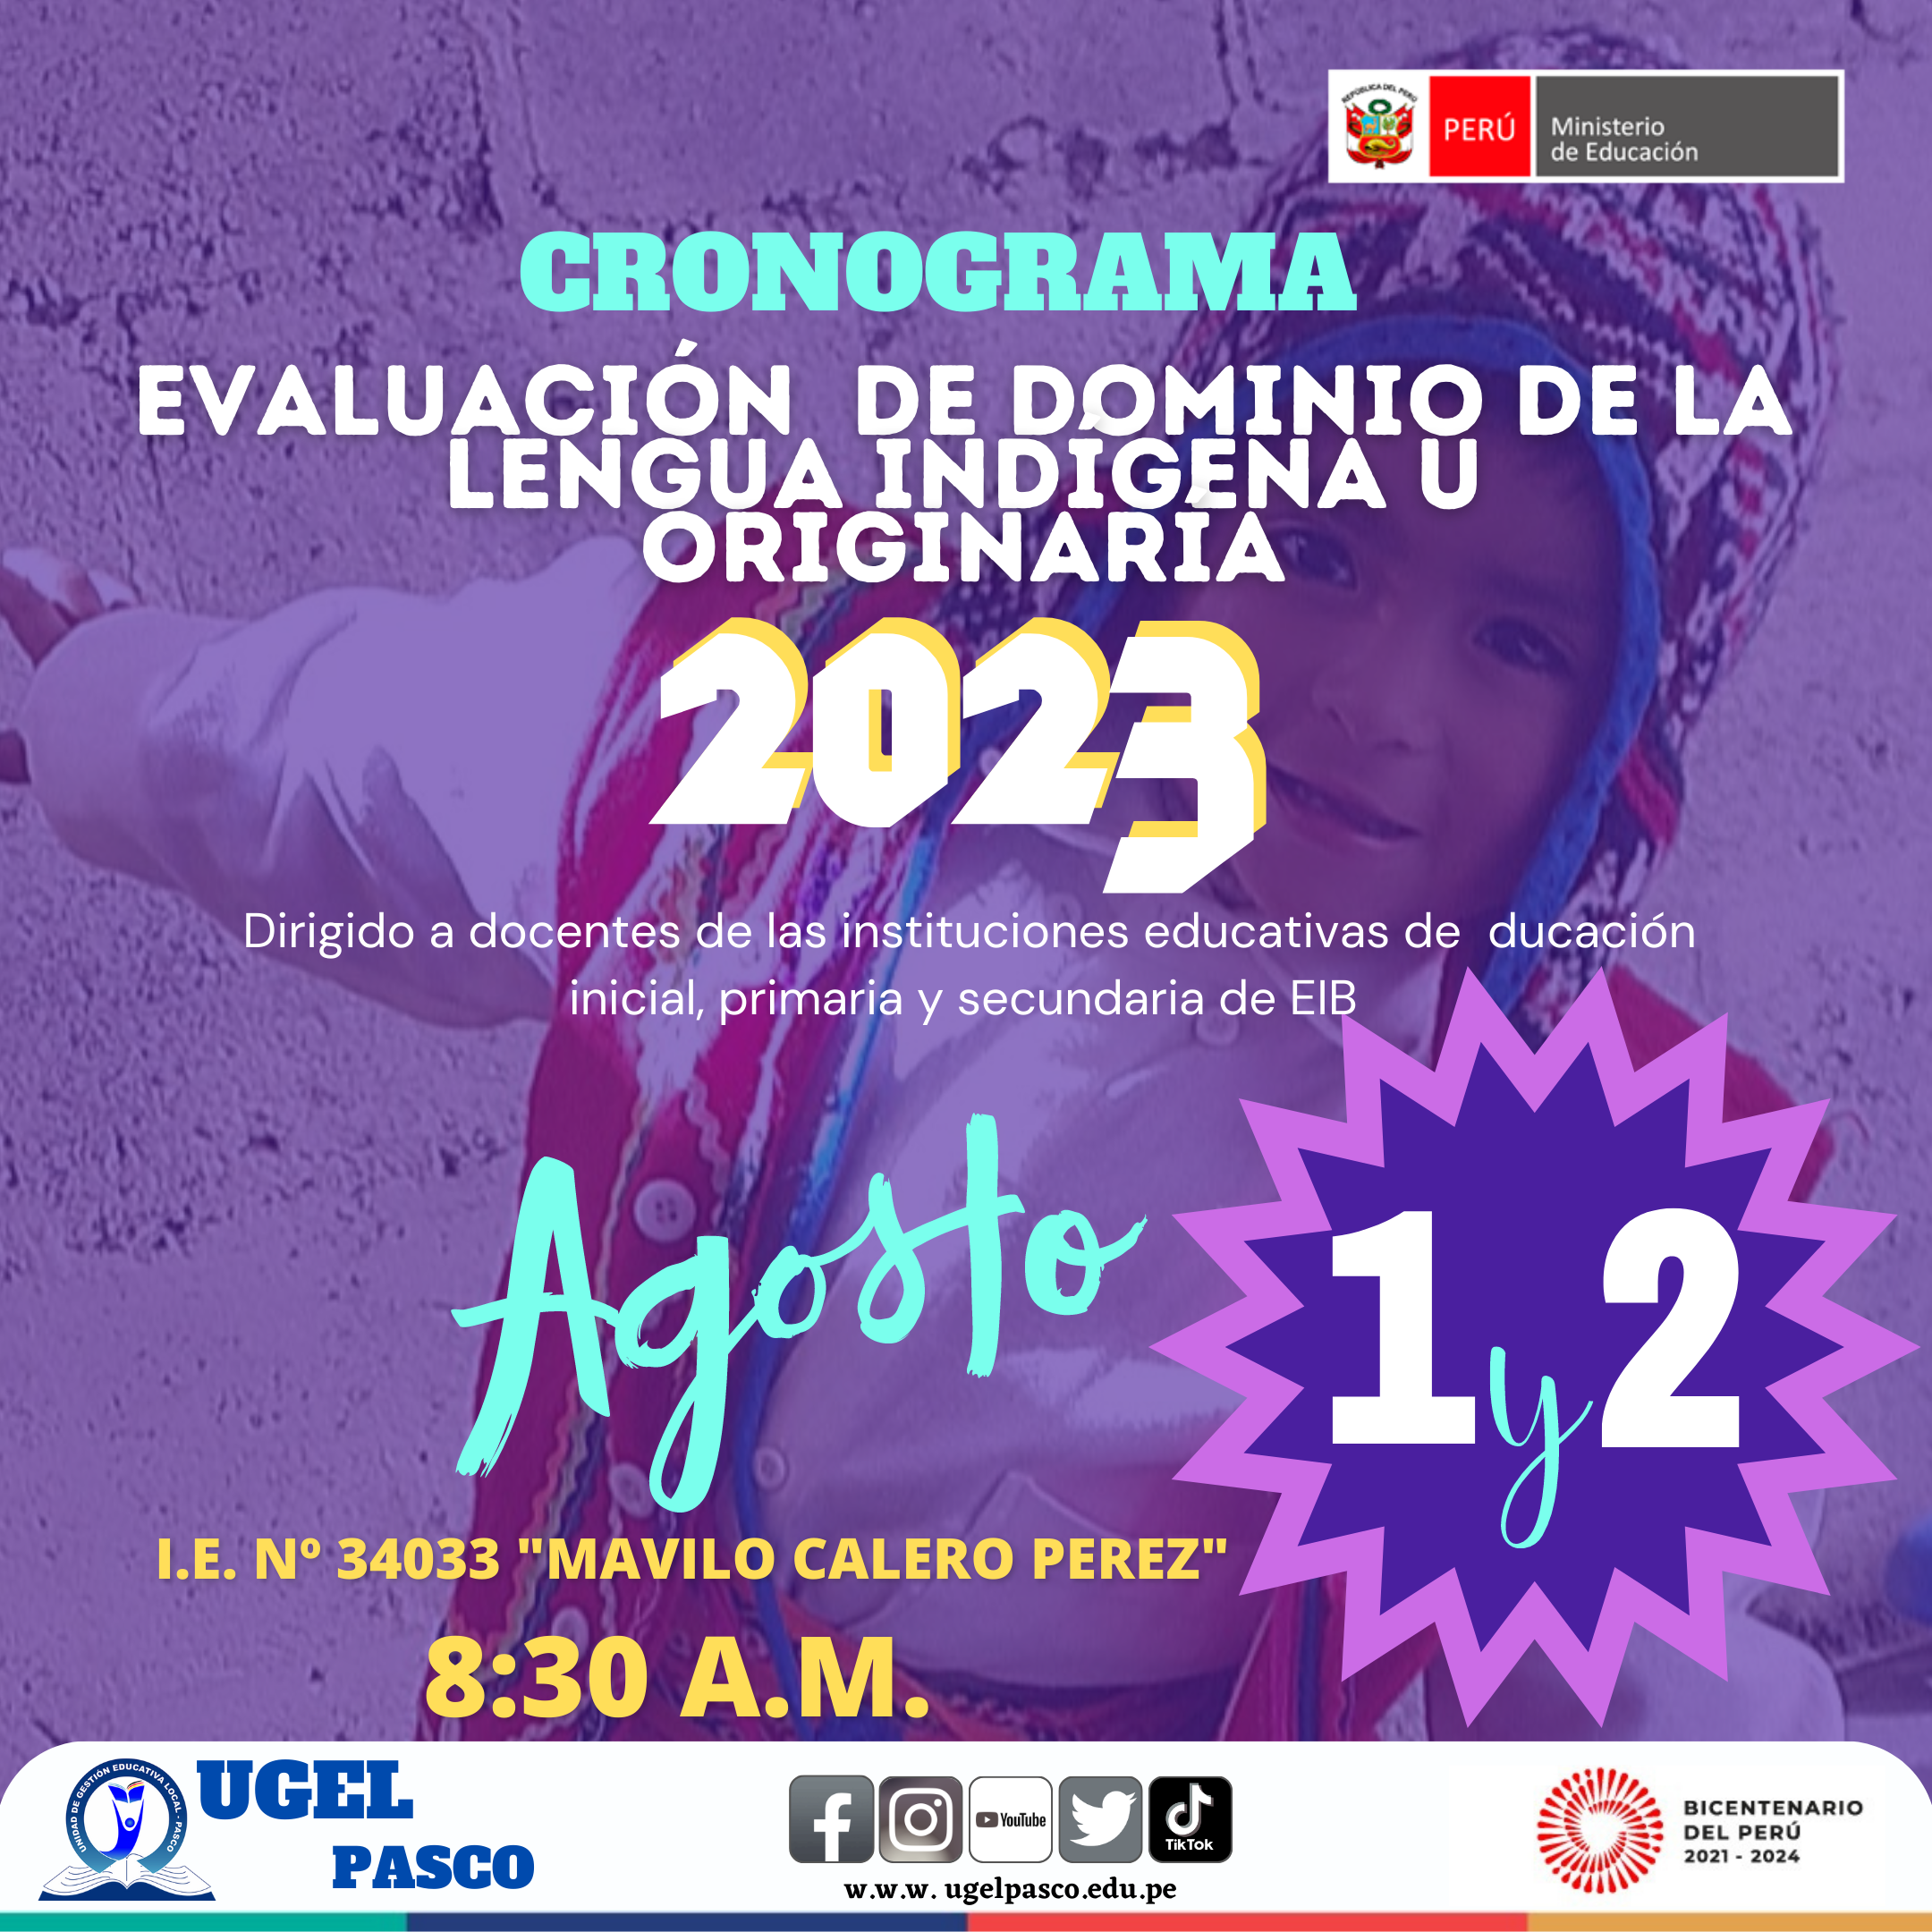 |#EvaluacíonEIB2023| |#Cronograma|             EVALUACIÓN DE DOMINIO DE LA LENGUA INDÍGENA U ORIGINARÍA